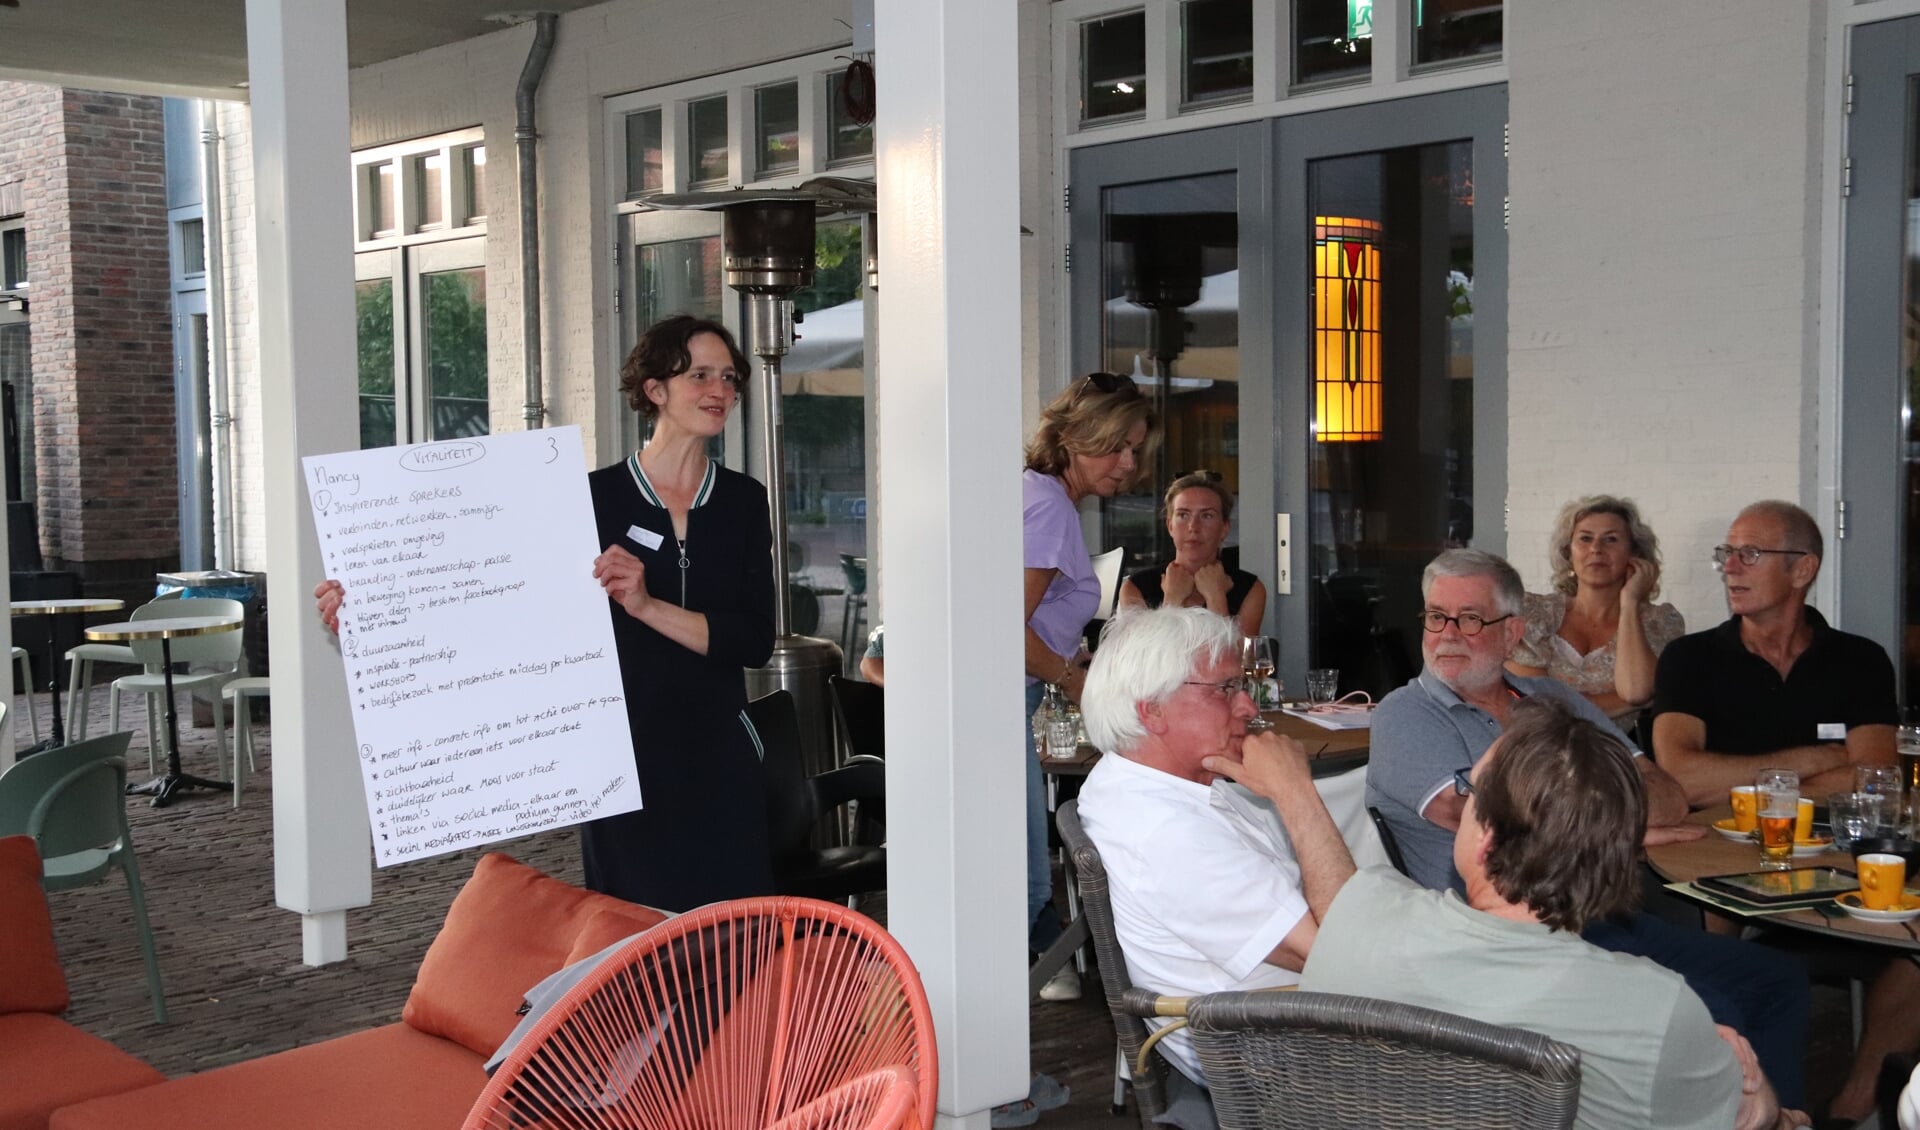 Tijdens de brainstormsessie bij 't Brouwhuis van Eetcafé 't Pumpke geeft Noortje de presentatie voor haar groepje ondernemers waarmee zij de sessie heeft gedaan.